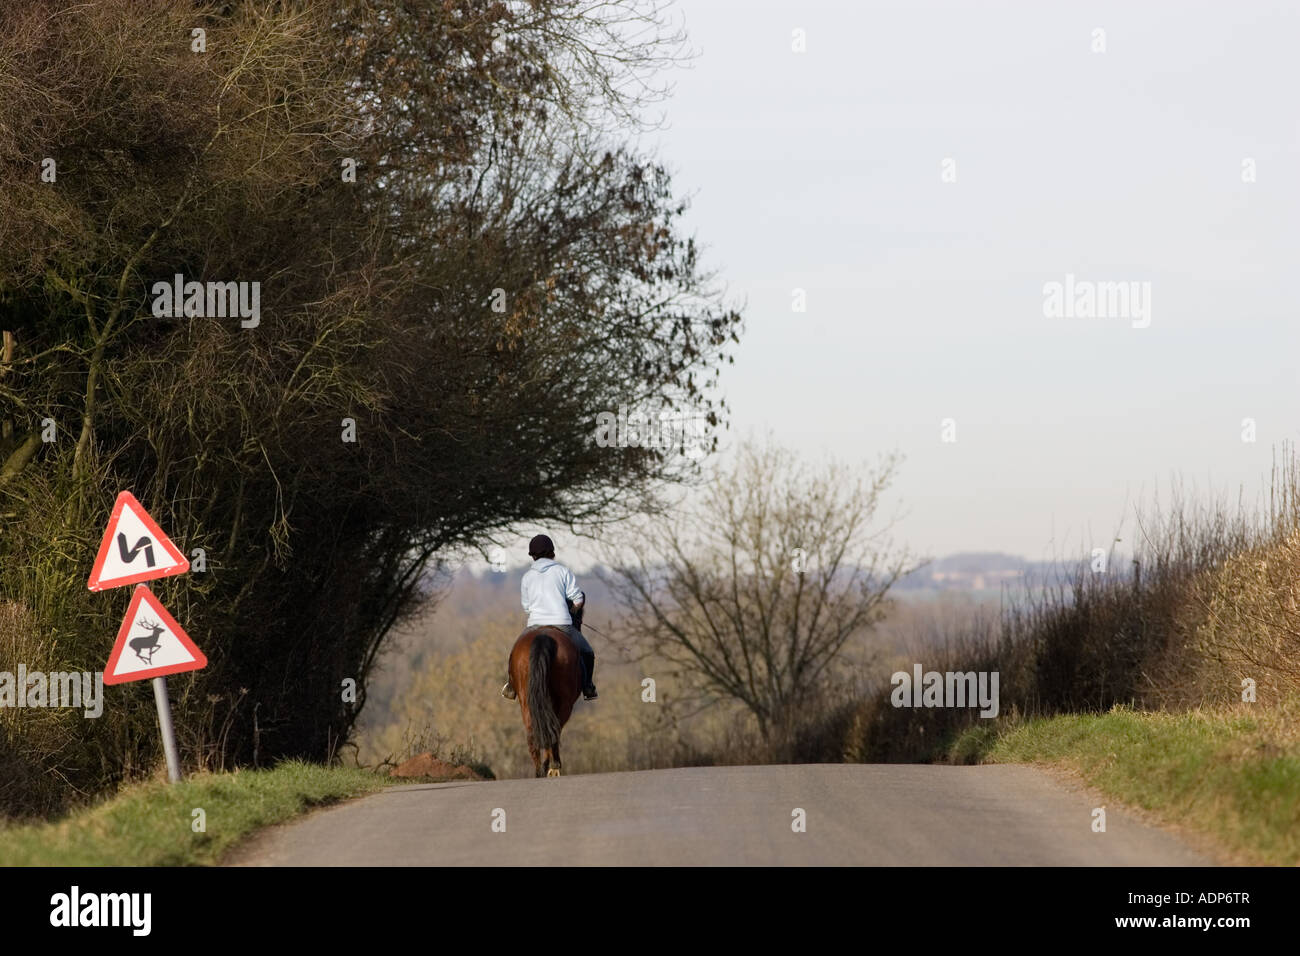 Jeune fille solitaire à cheval en pays village lane Kingham Waer les Cotswolds Angleterre Royaume-Uni Banque D'Images